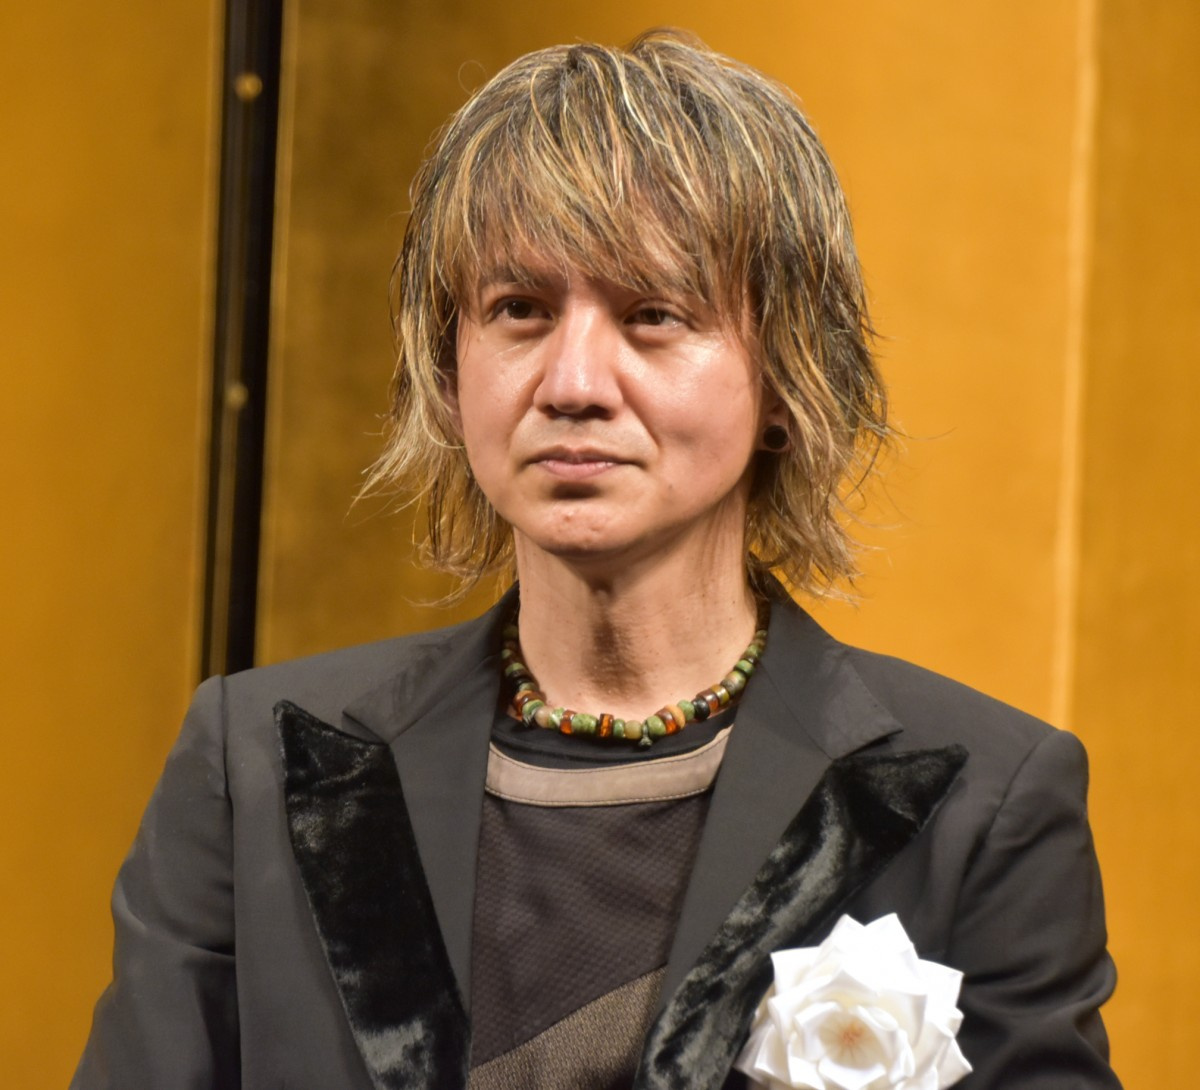 岡本健一 演劇の醍醐味を力説 究極にぜいたく 紀伊国屋演劇賞 個人賞に輝く Oricon News